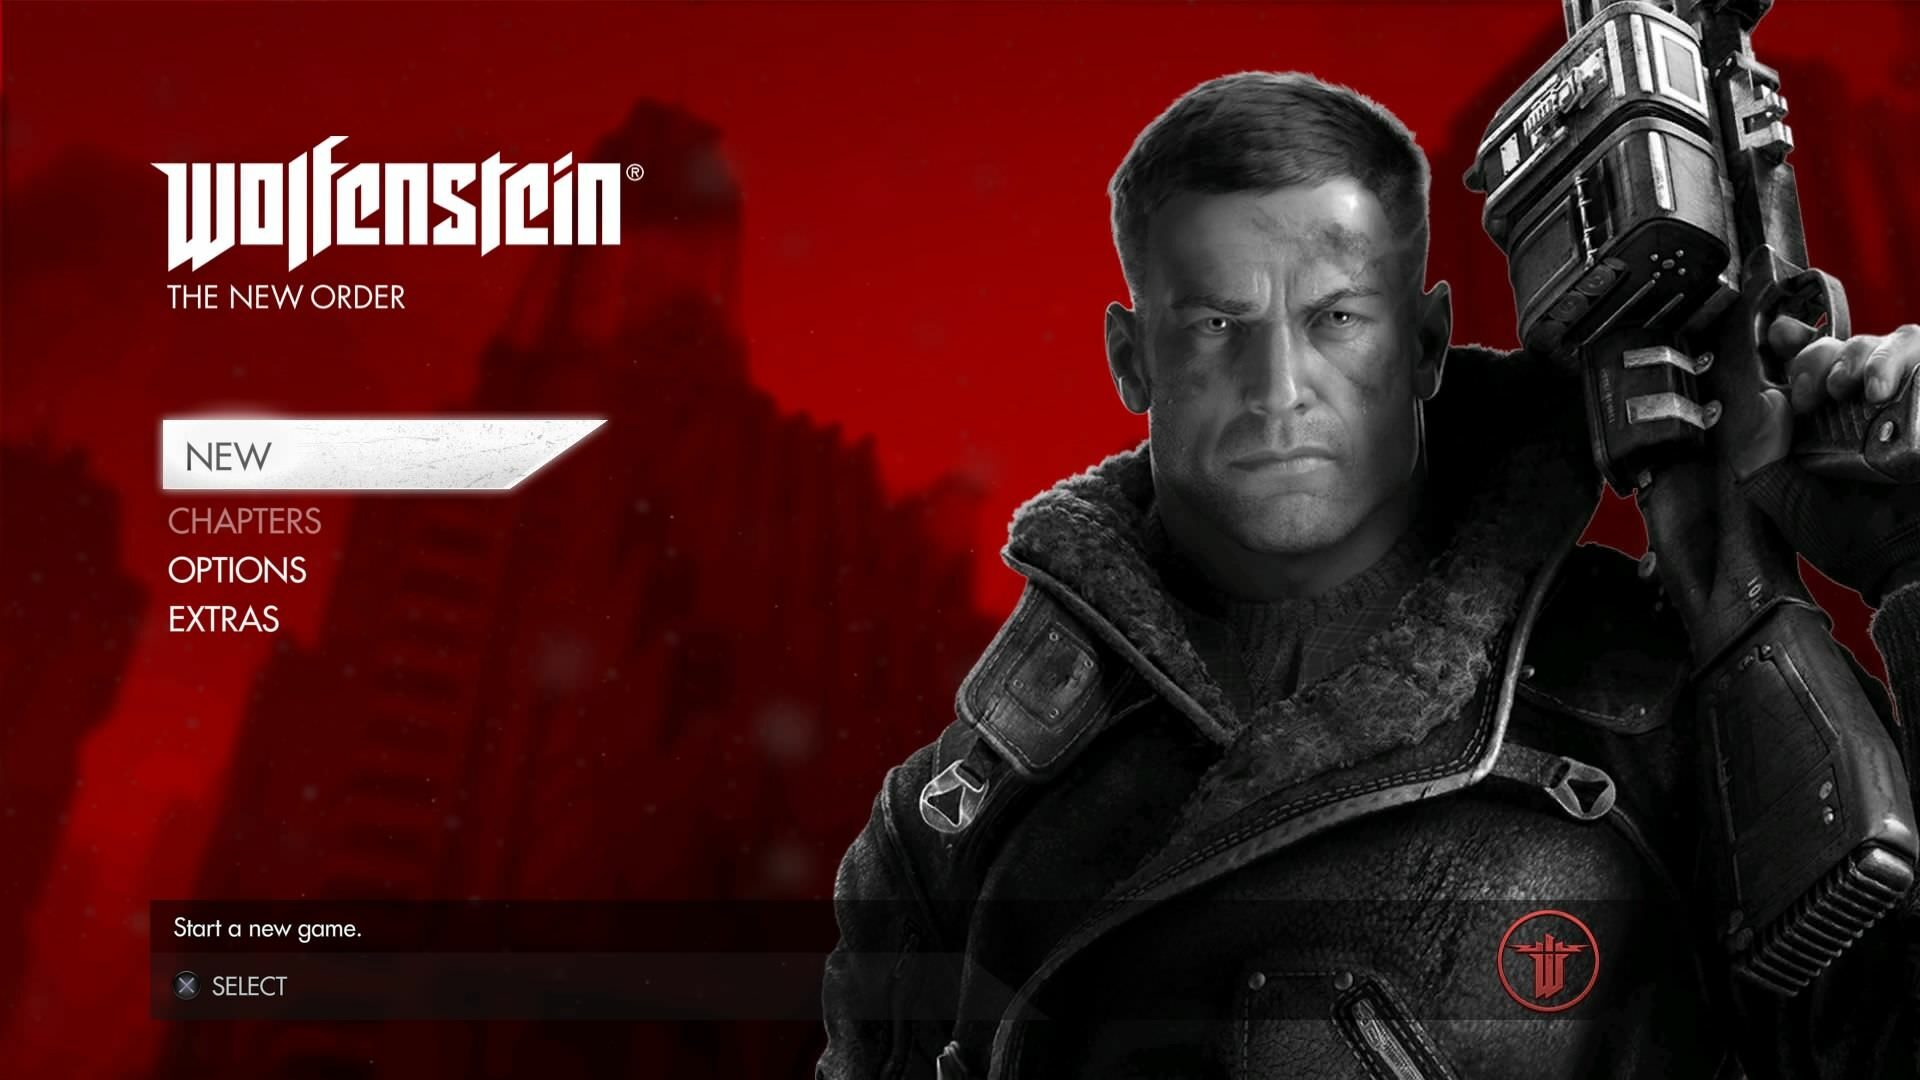 Wolfenstein: The New Order på Steam